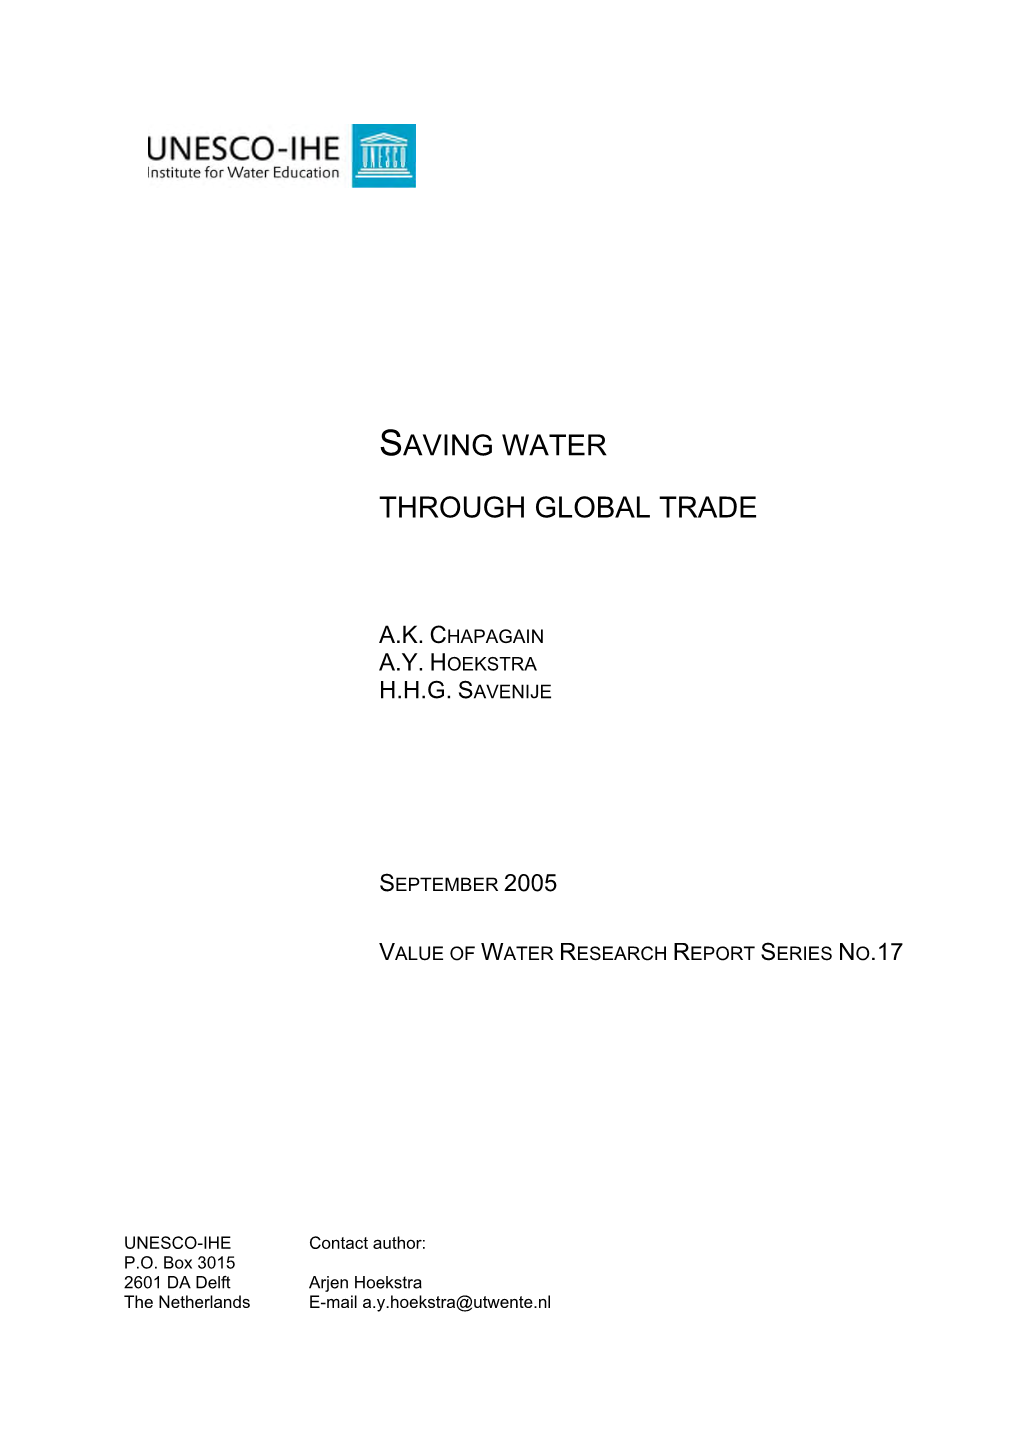 Saving Water Through Global Trade A.K